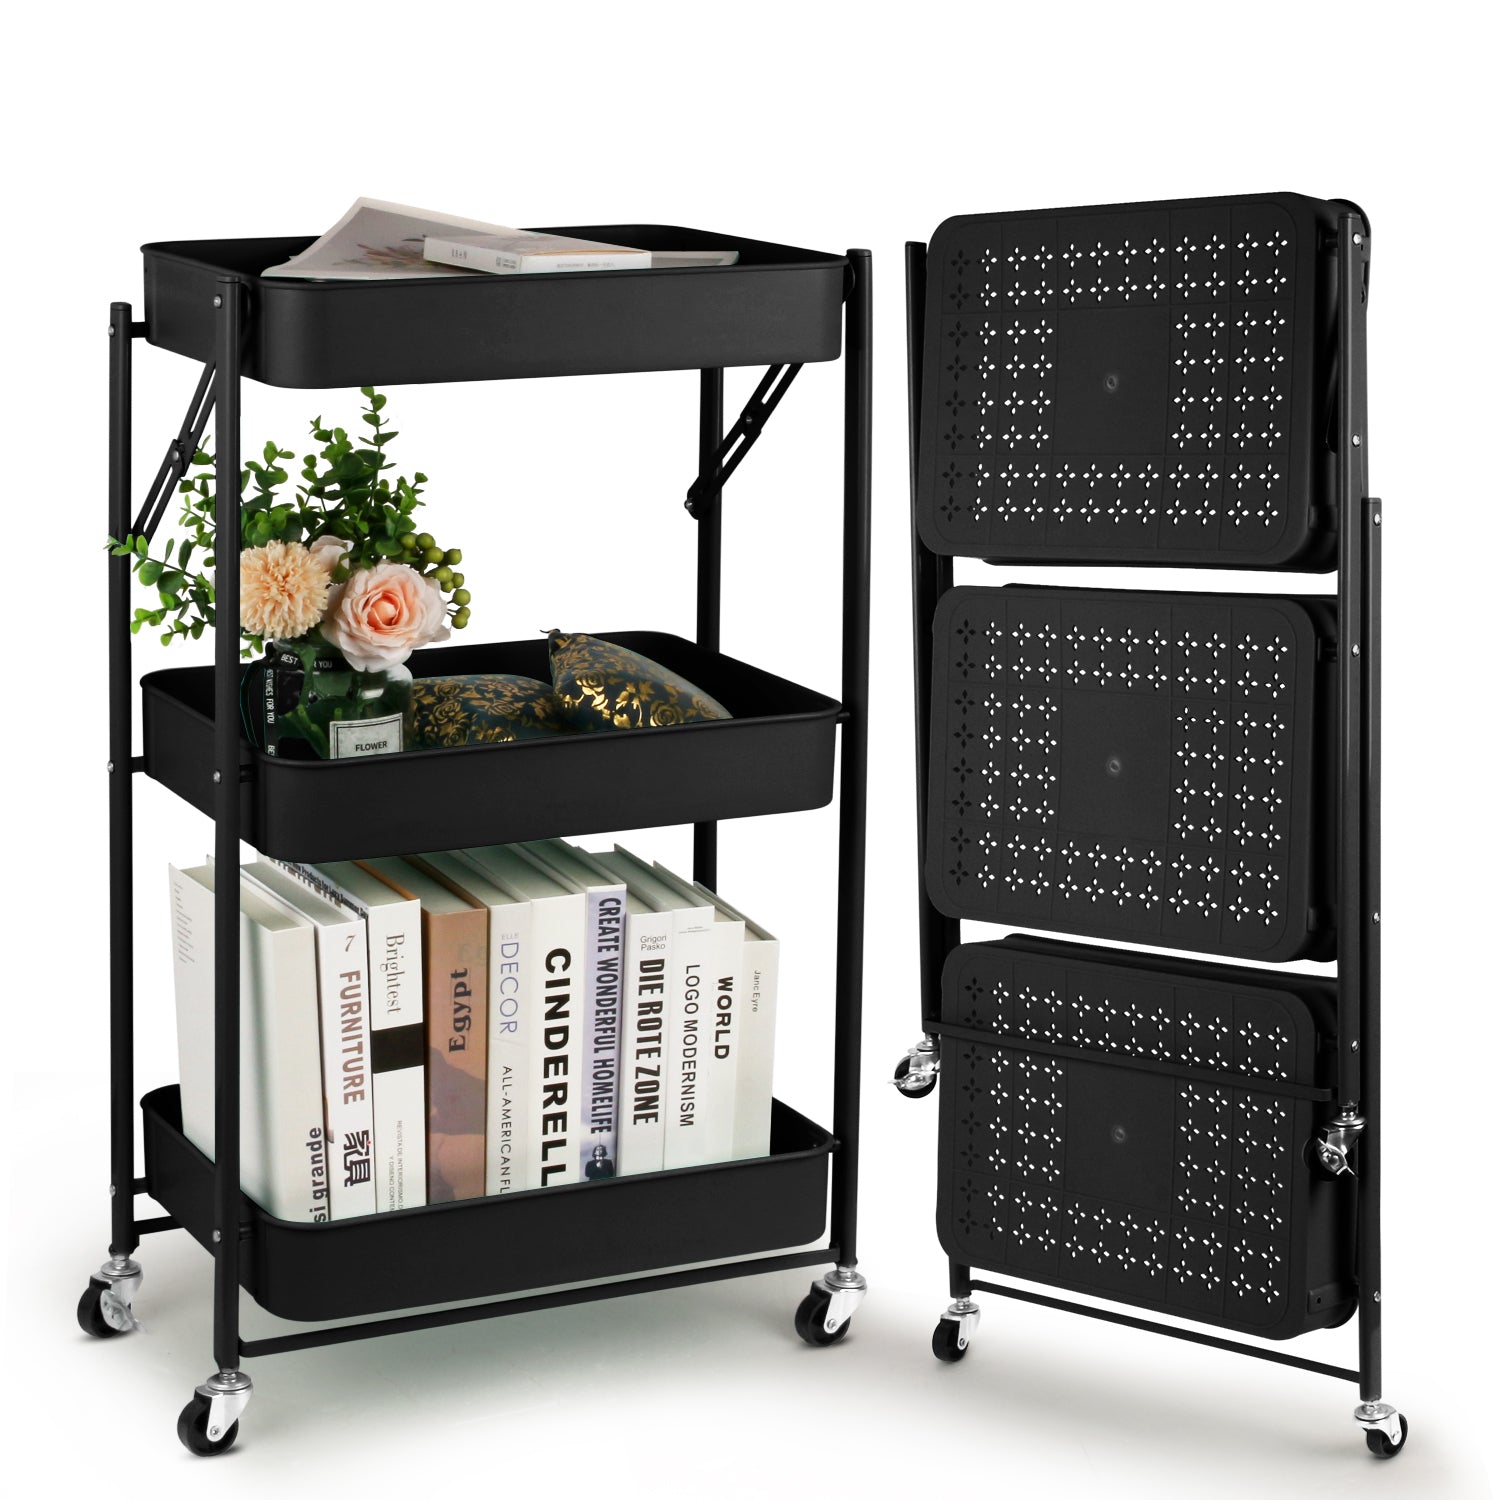 3-Tier-Cart-Storage-Rack-Rolling-Storage-Cart-Organizer-for-Kitchen-Bathroom-Mobile-Storage-Organizer-with-Wheels-Black